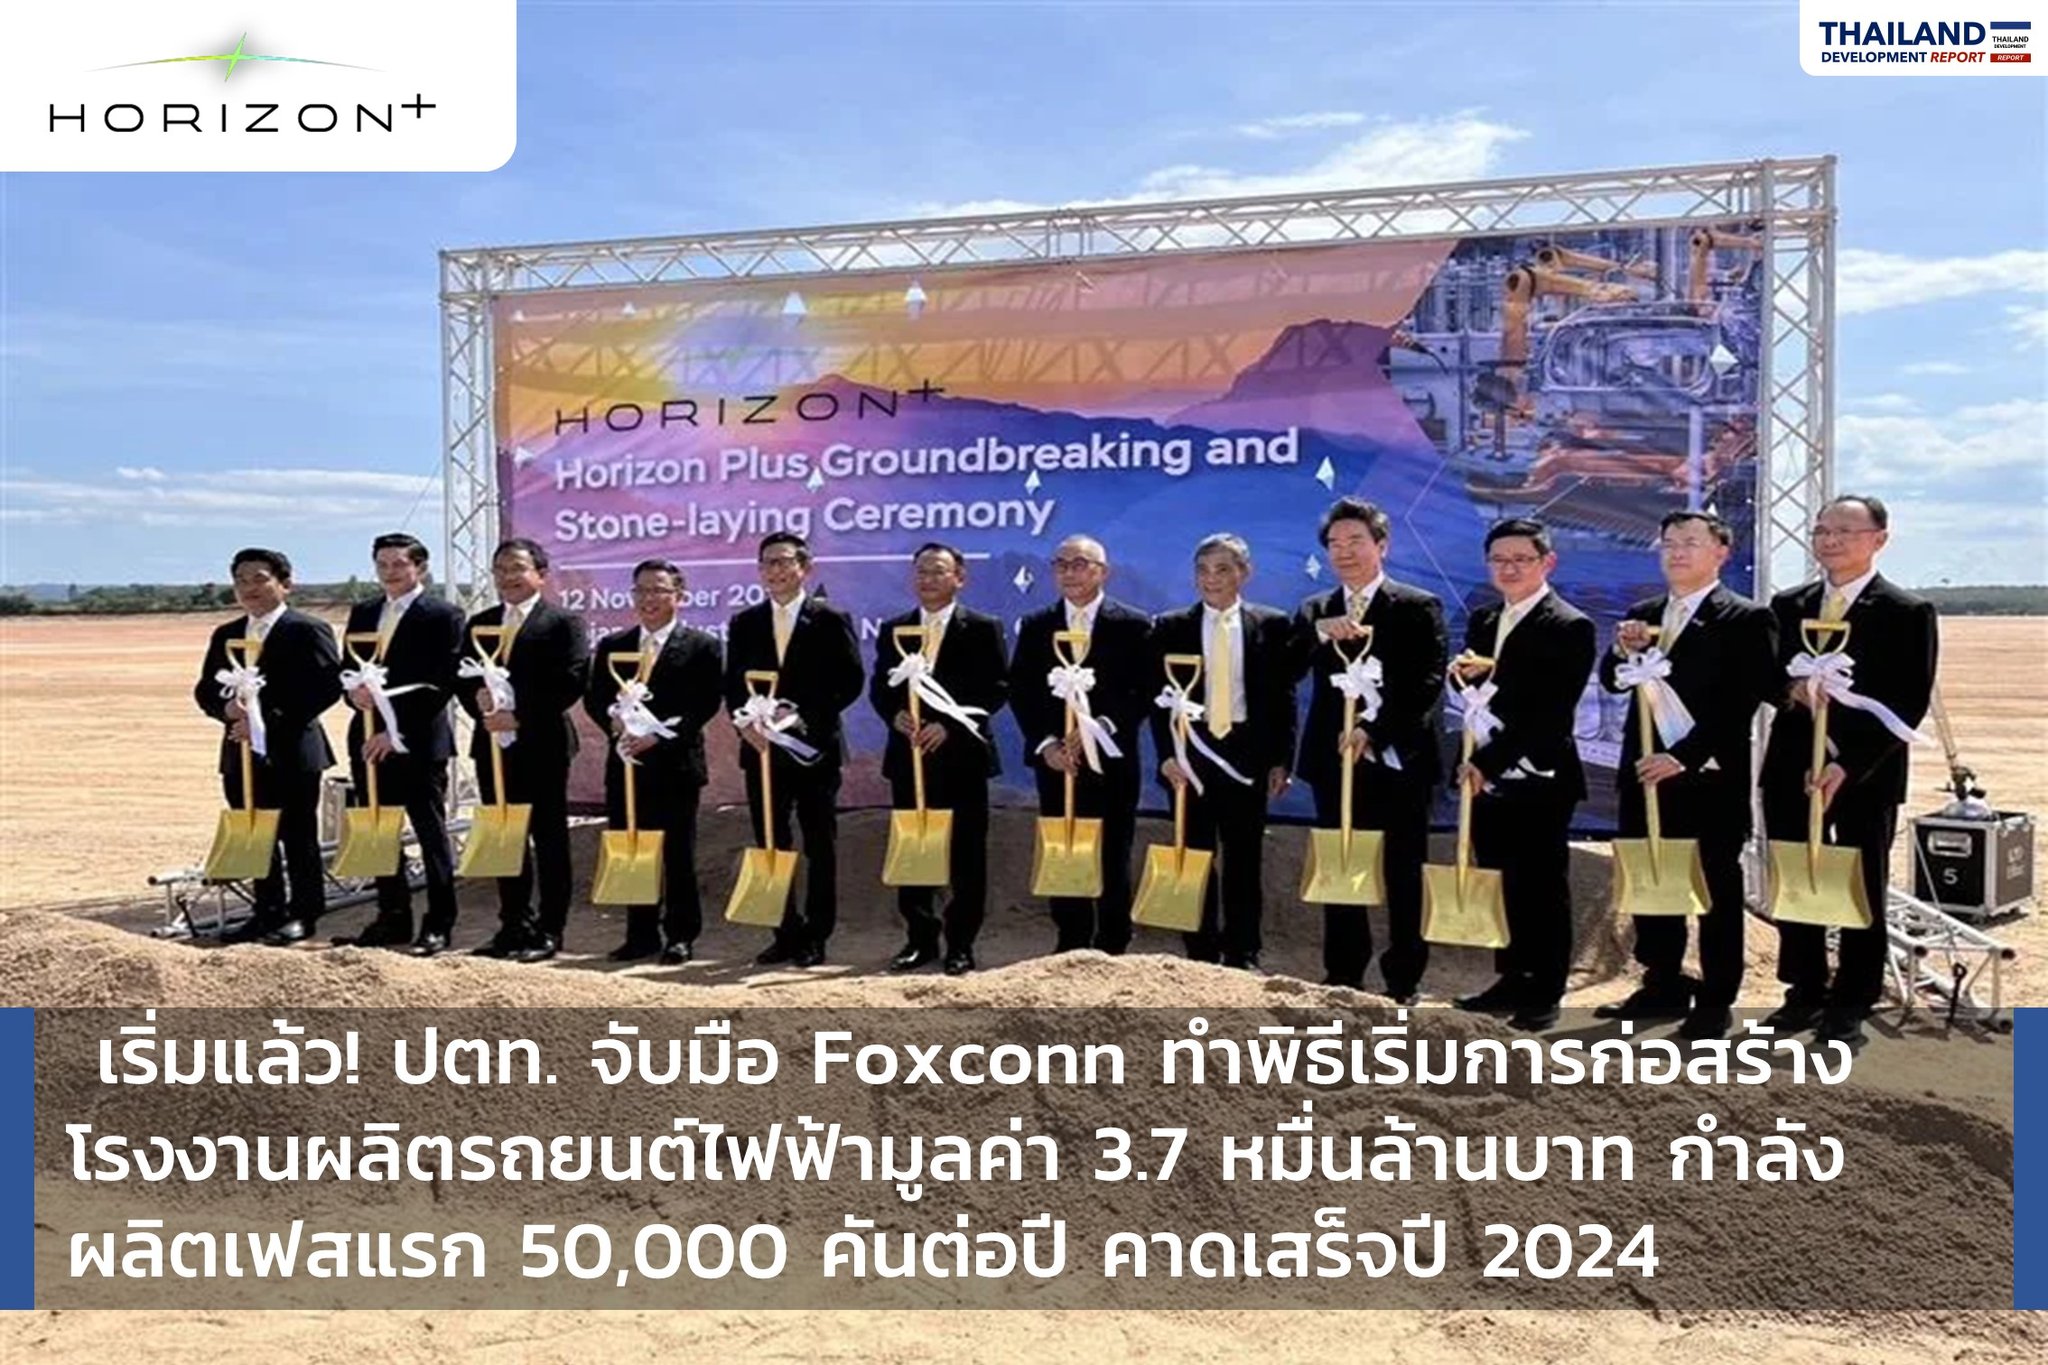 เริ่มแล้ว! ปตท. จับมือ Foxconn ทำพิธีเริ่มการก่อสร้าง โรงงานผลิตรถยนต์ไฟฟ้ามูลค่า 3.7 หมื่นล้านบาท กำลัง ผลิตเฟสแรก 50,000 คันต่อปี คาดเสร็จปี 2024